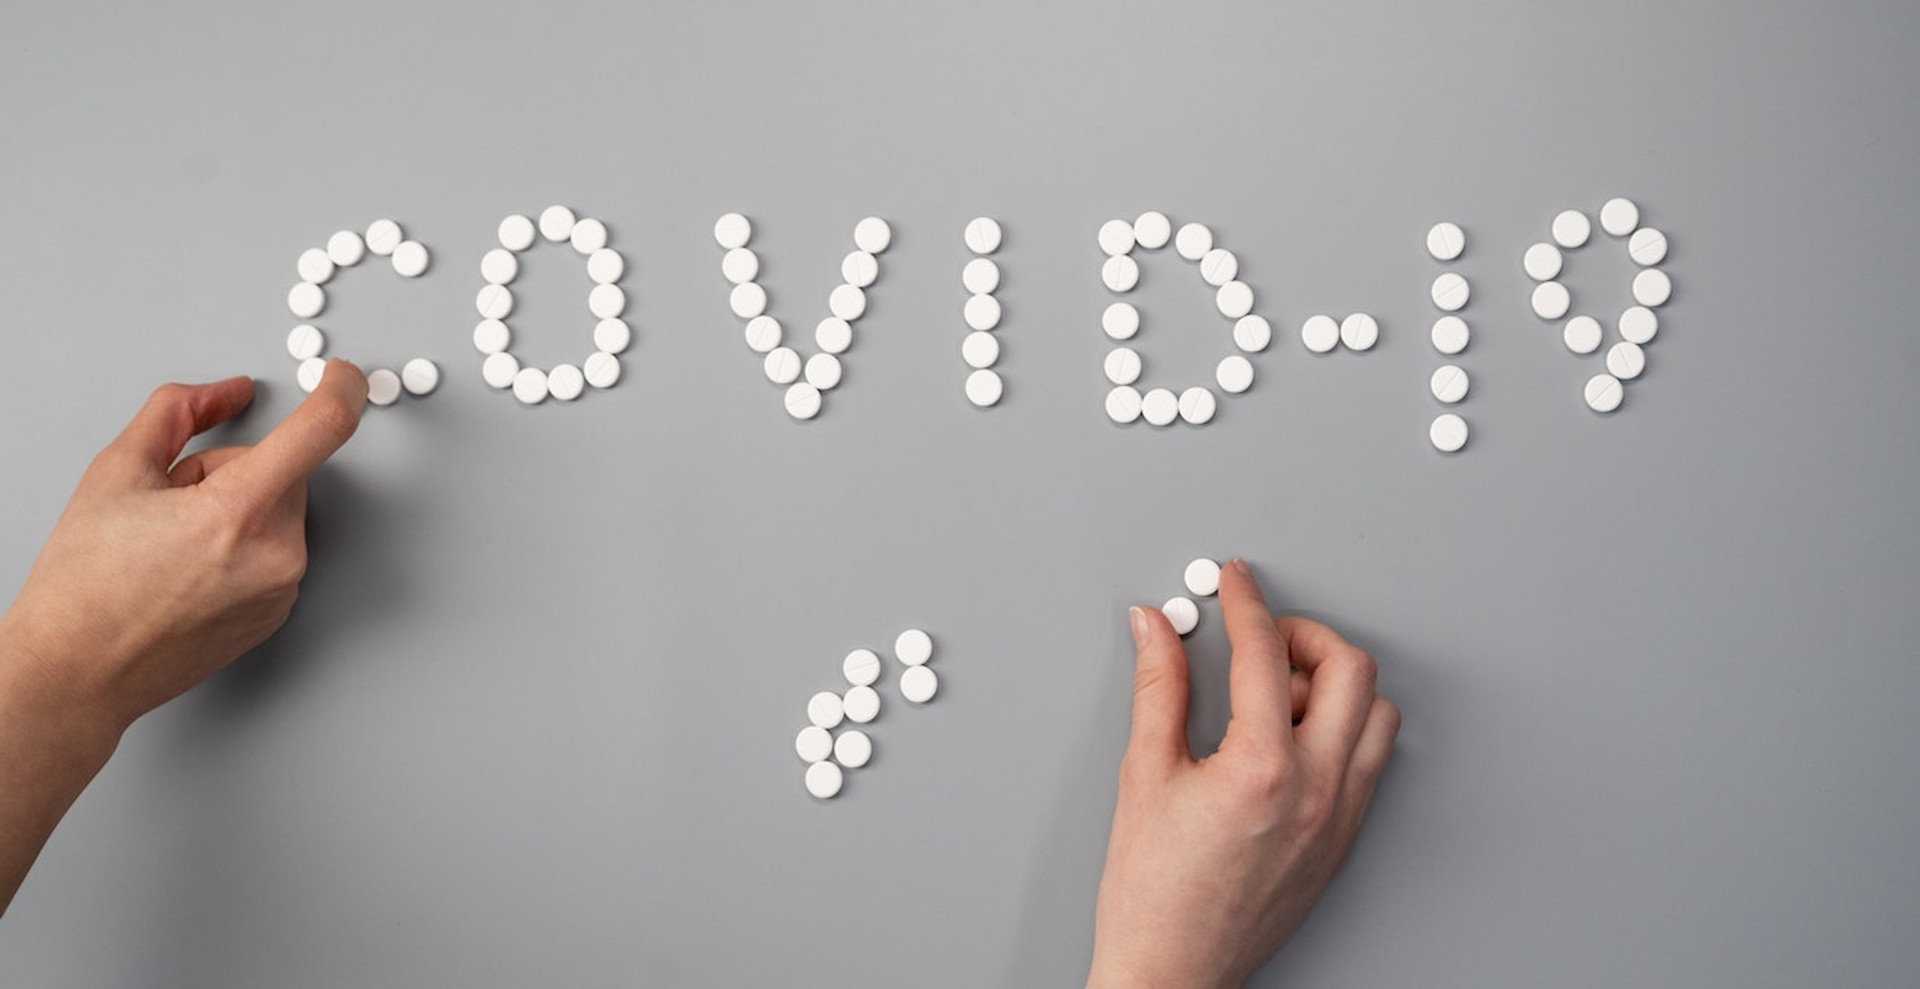 Новий алгоритм МОЗ щодо надання допомоги при COVID-19. Що важливо знати